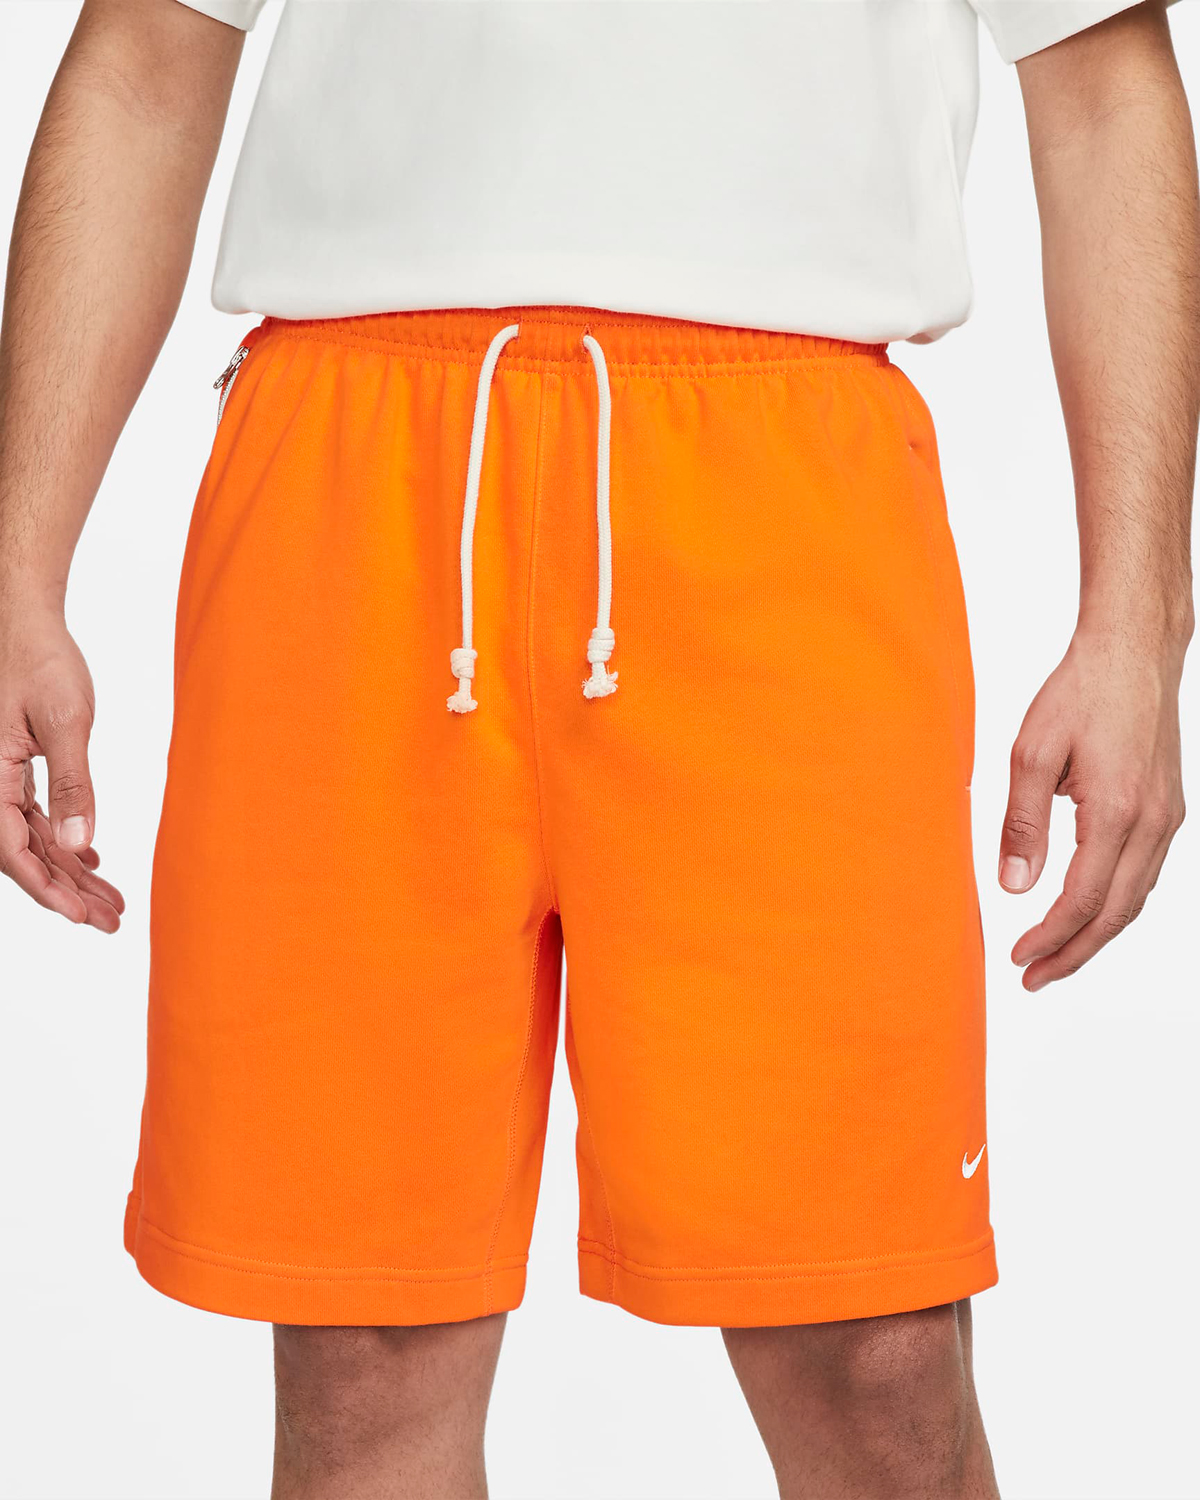 Nike-Standard-Issue-Shorts-Safety-Orange